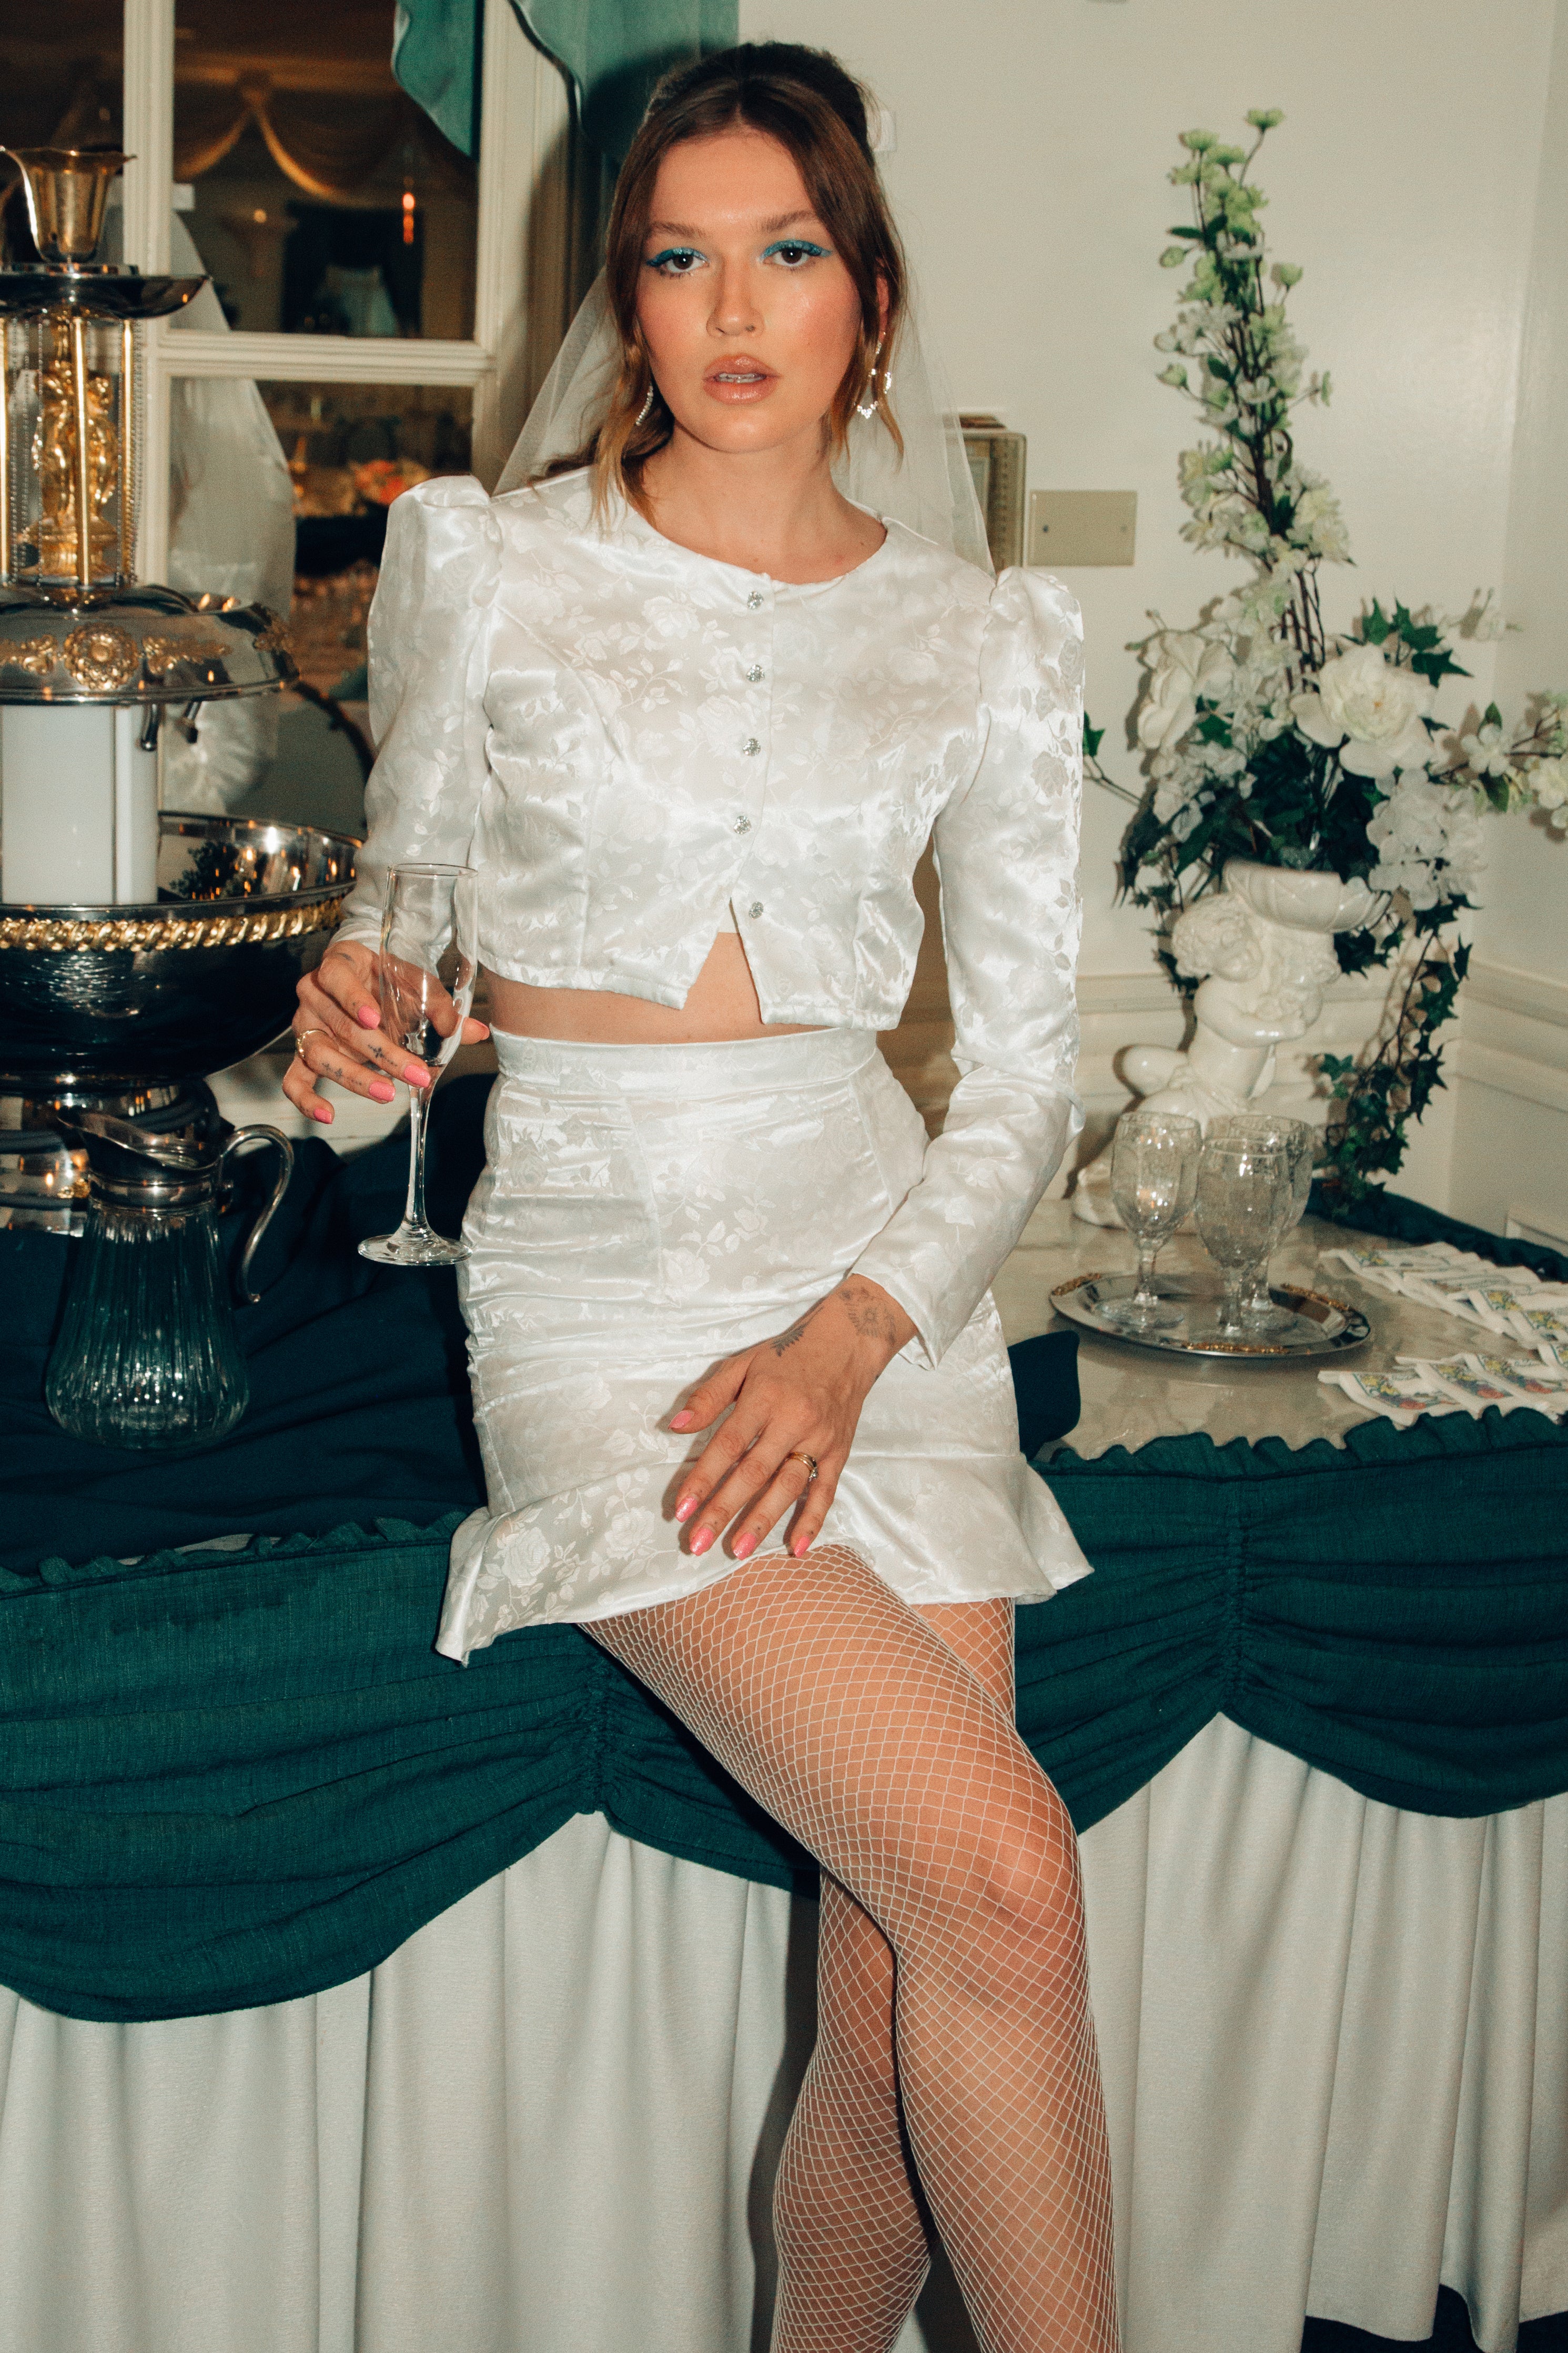 Dalia Satin Jacquard Rose Bridal Mini Skirt - Made to Order